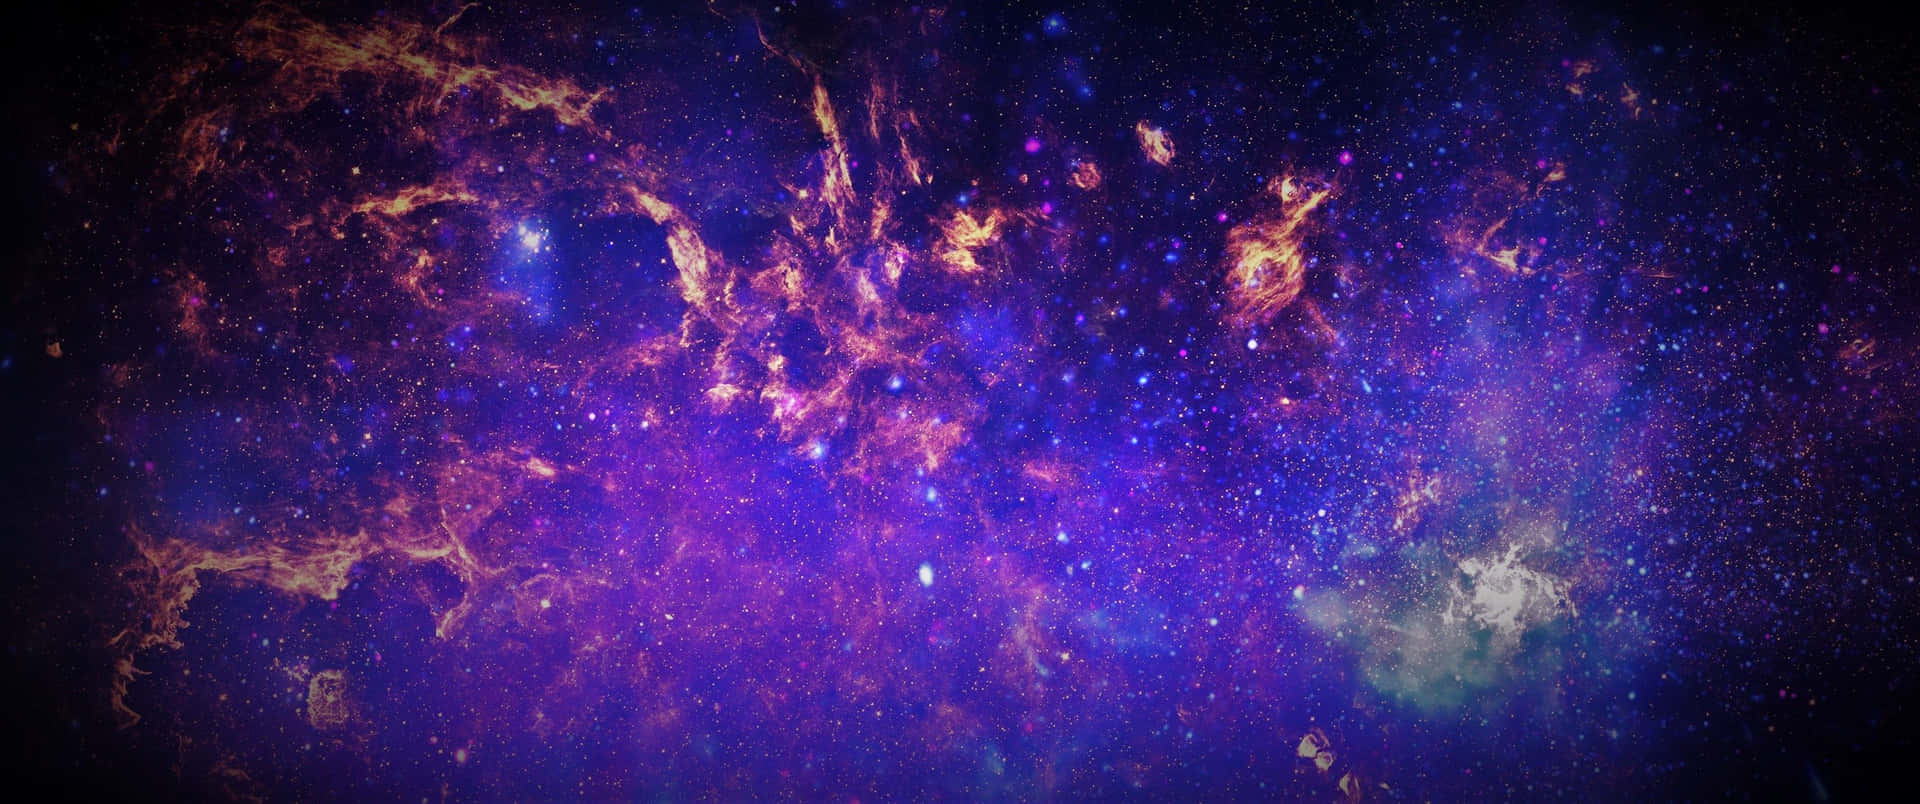 Et kæmpestort udsnit af Melkevejen med talrige stjerner og nebuløse objekter. Wallpaper